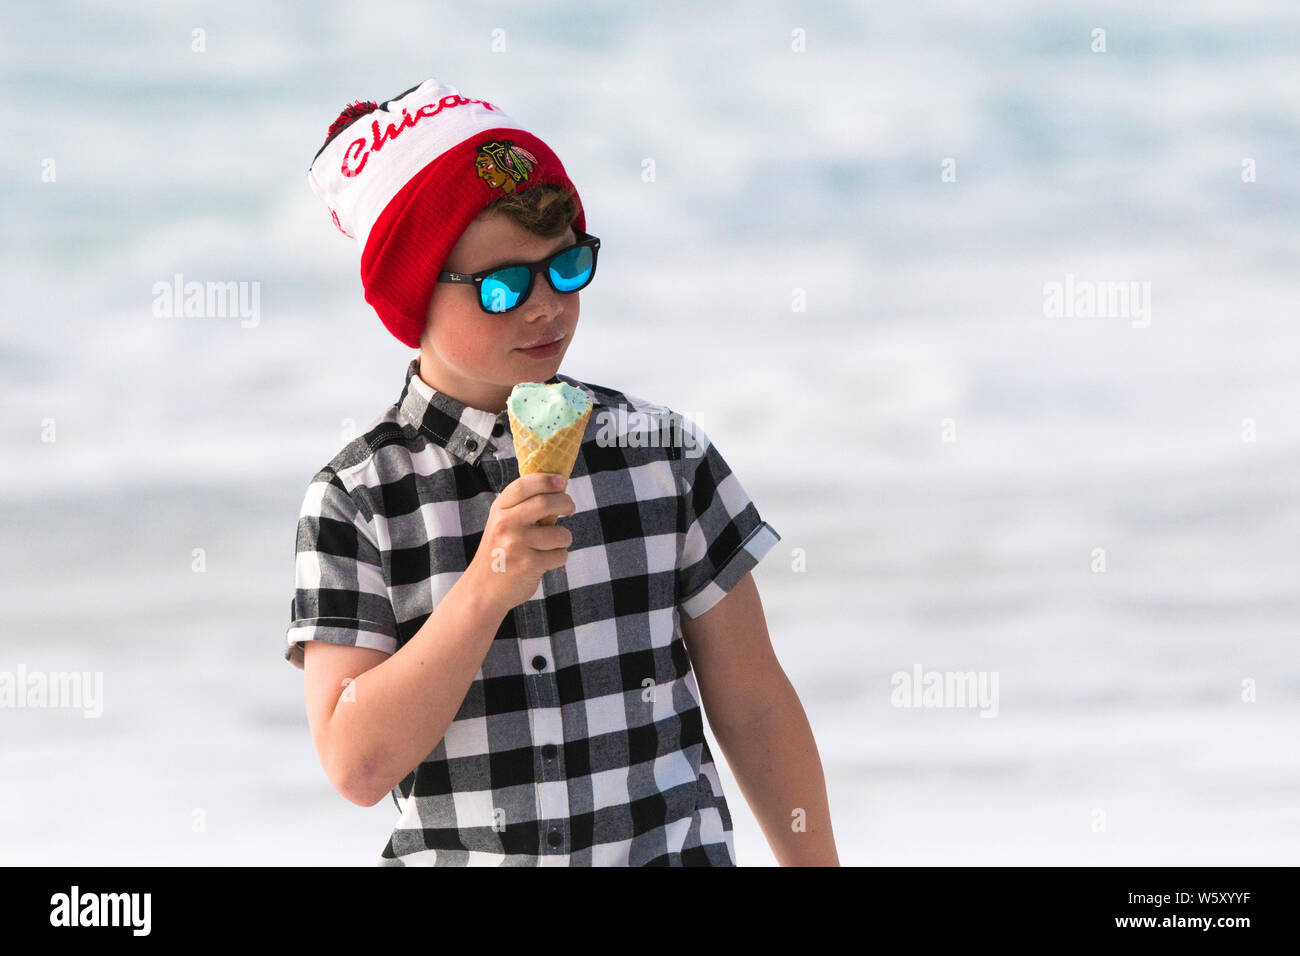 Un jeune garçon portant des lunettes réfléchissantes, chemise et un Blackhawks de Chicago bobble hat manger une glace. Banque D'Images